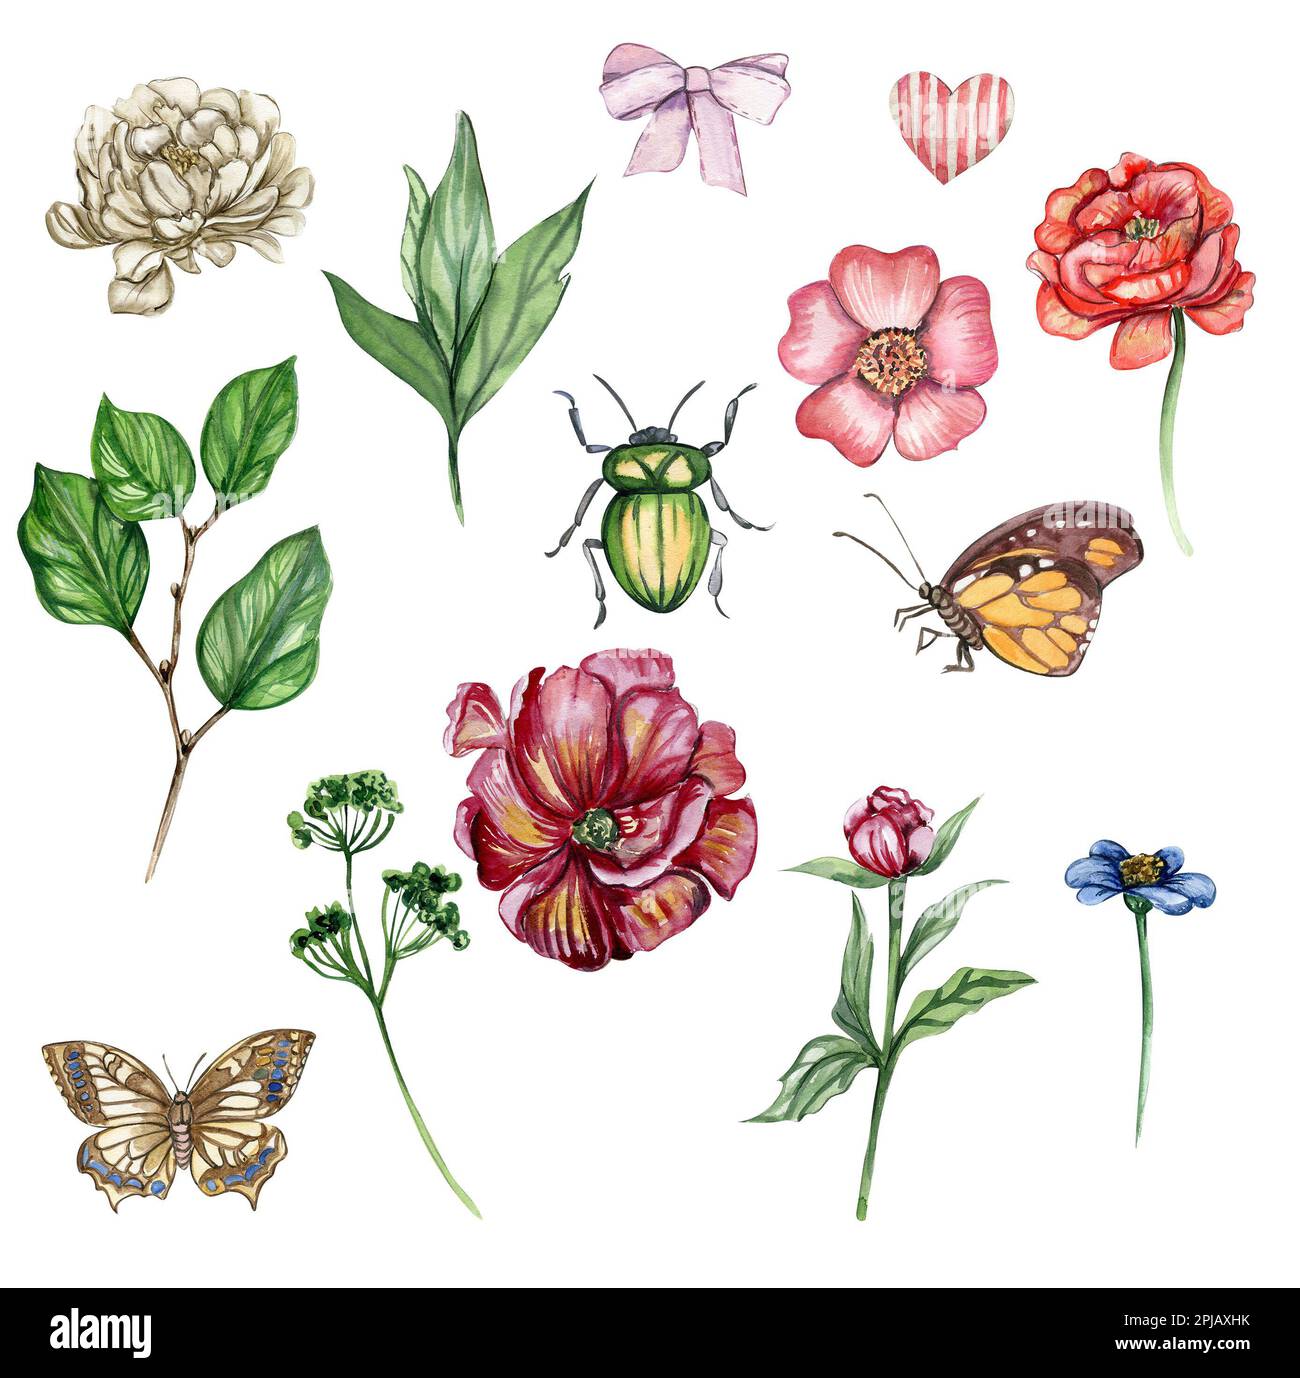 Aquarelle illustration ensemble de fleurs éléments, butterfly. Fleurs fleuries dessinées à la main avec aquarelle sur un fond blanc isolé. Banque D'Images